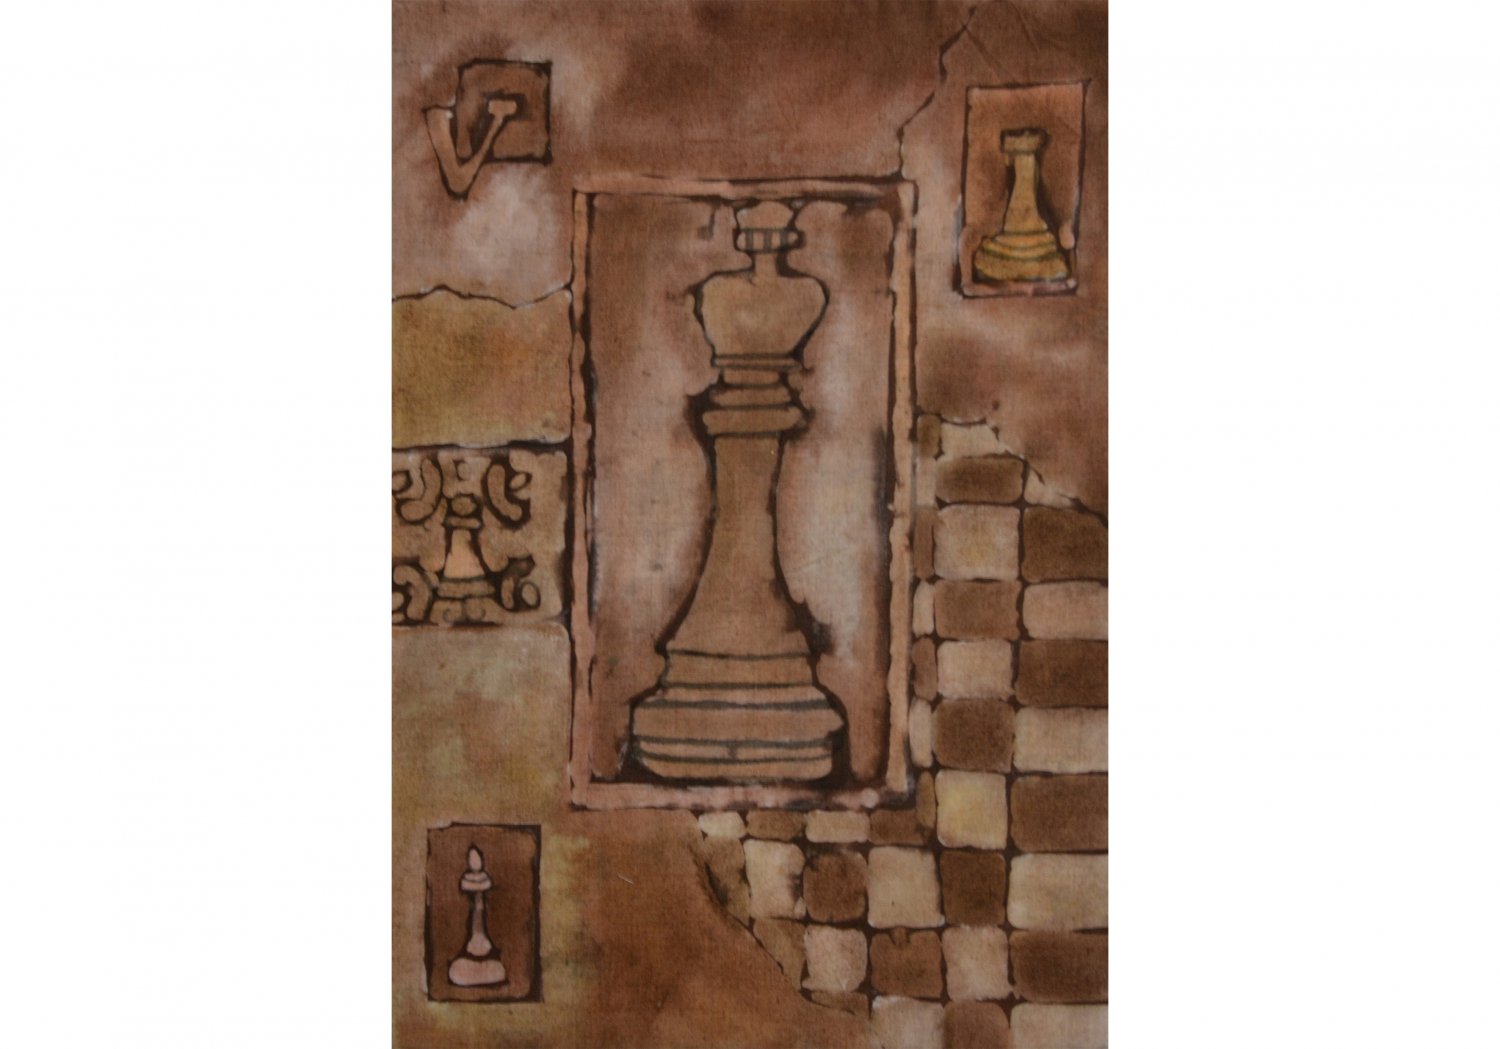 Wyróżnienie (Szkoła ponadpodstawowa) Zuzanna Grzywińska. Tytuł “ Dama w kartach”. Na obrazku dominują odcienie brązu. Kompozycja inspirowana grą w szachy przedstawia figury szachowe oraz pole do gry.